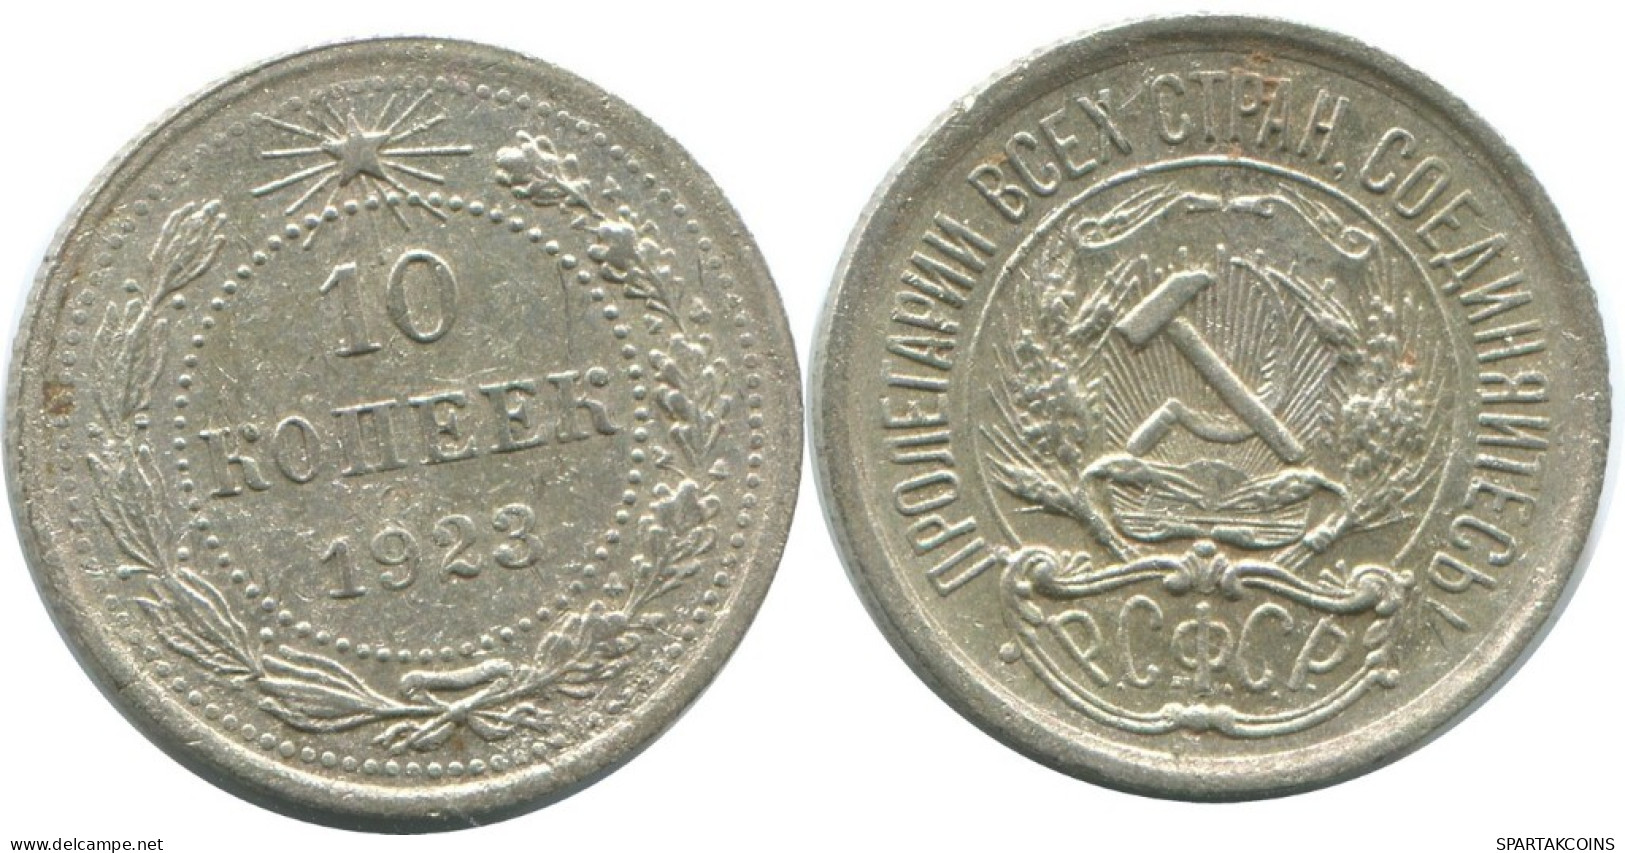 10 KOPEKS 1923 RUSSLAND RUSSIA RSFSR SILBER Münze HIGH GRADE #AE988.4.D.A - Russia